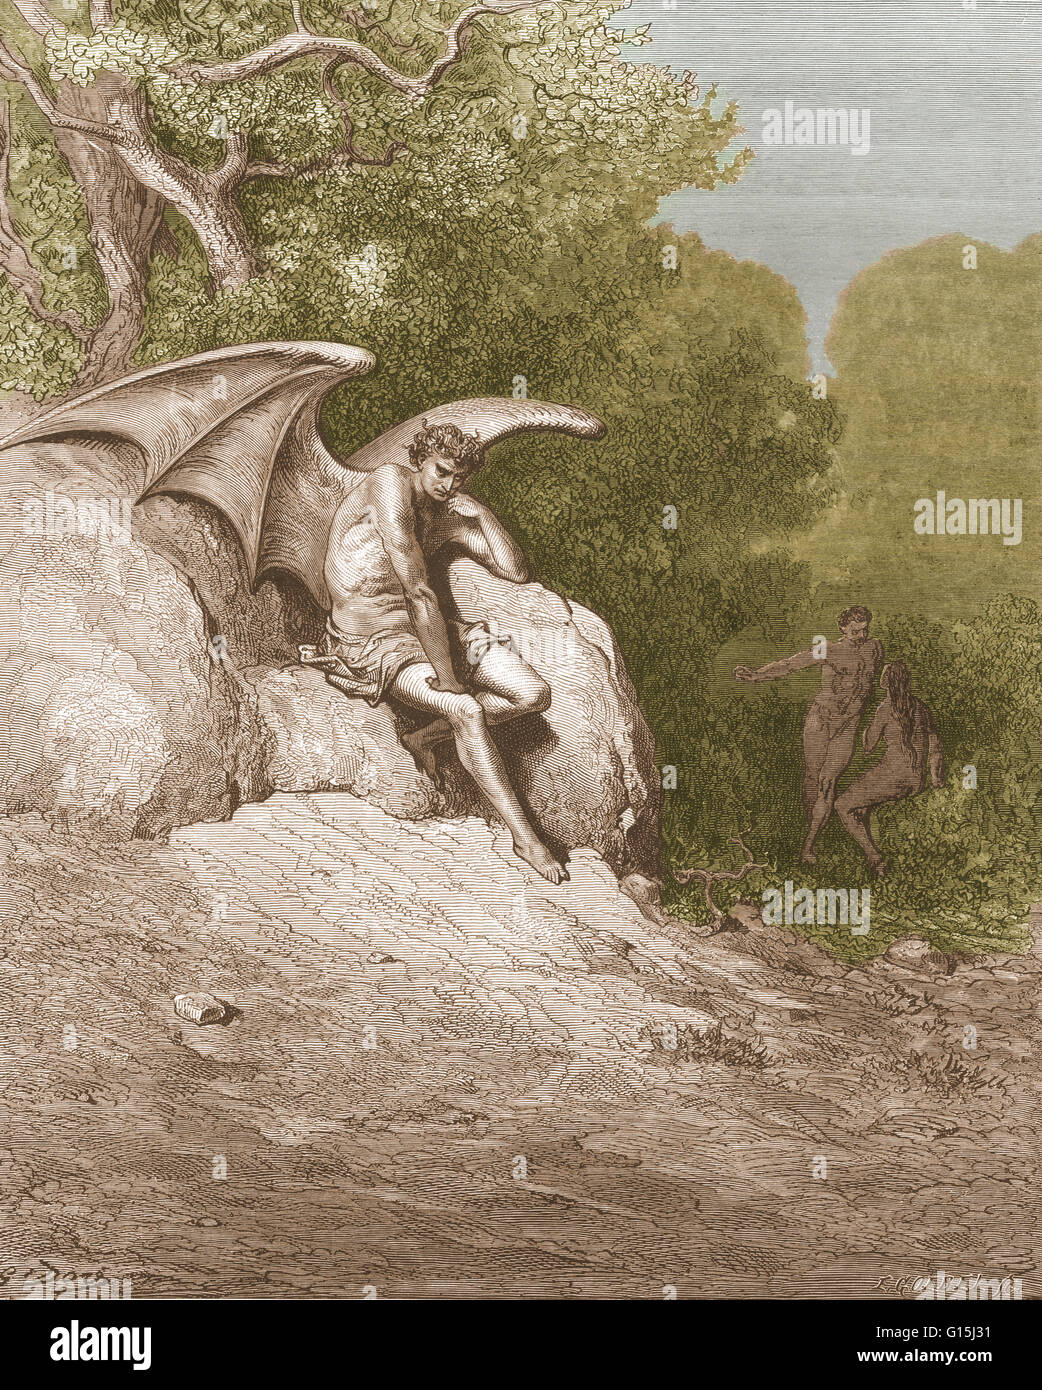 Une illustration de Satan mà sur se cachant dans le serpent, avec Adam et Eve dans l'arrière-plan, par Gustave Dore, de John Milton's Paradise Lost, Livre 9, lignes 99 et 100 : "Ô Terre, comment comme au ciel, si ce n'est pas préféré / plus juste." Banque D'Images